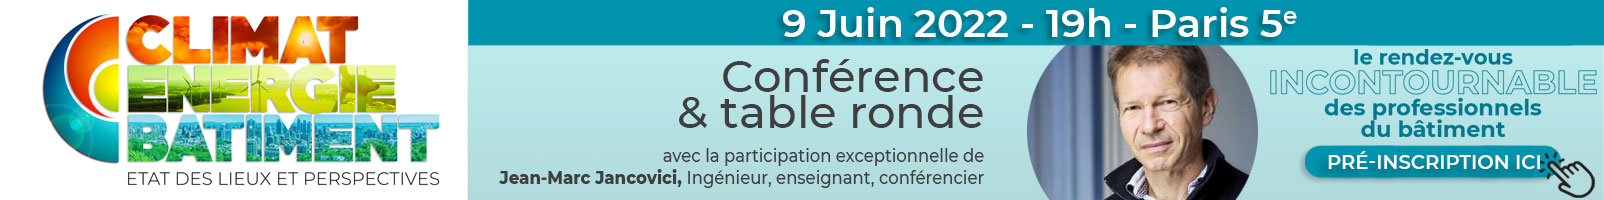 event-kp1-9-juin-paris